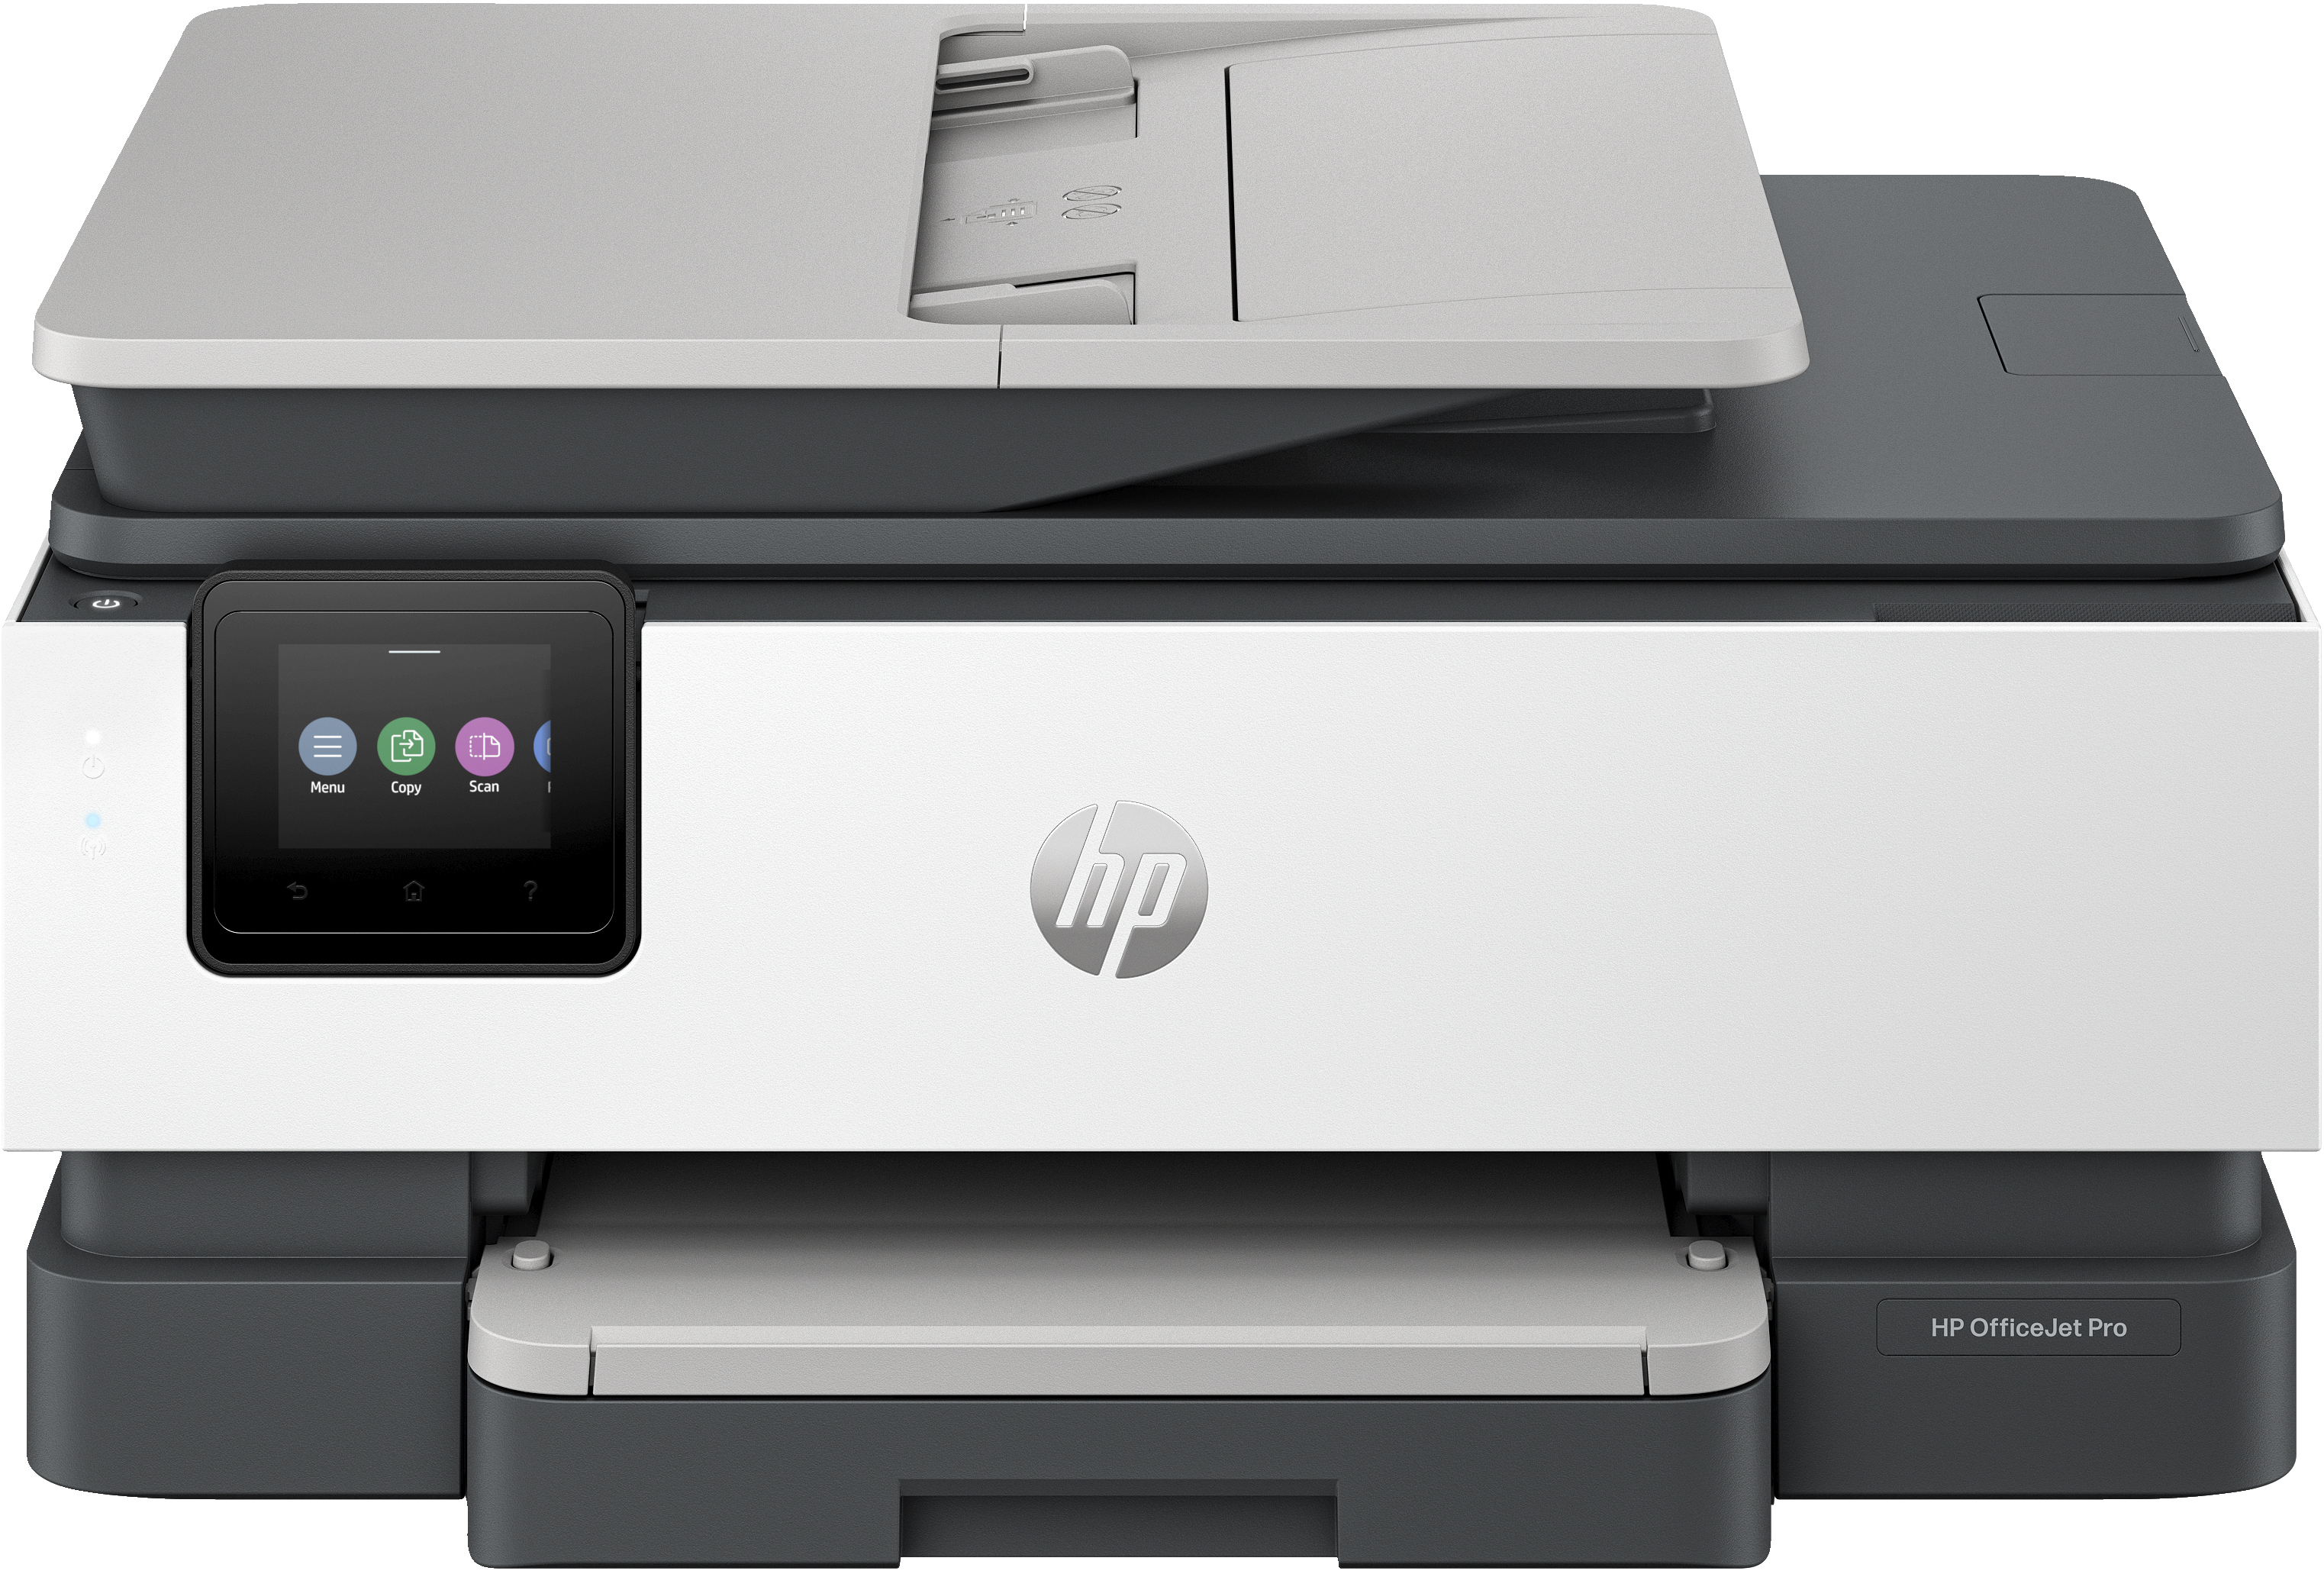 HP OfficeJet Pro Stampante multifunzione HP 8125e, Colore, Stampante per Casa, Stampa, copia, scansione, alimentatore automatico di documenti; touchscreen; Scansione Smart Advance; Modalit silenziosa; Stampa tramite VPN con HP+